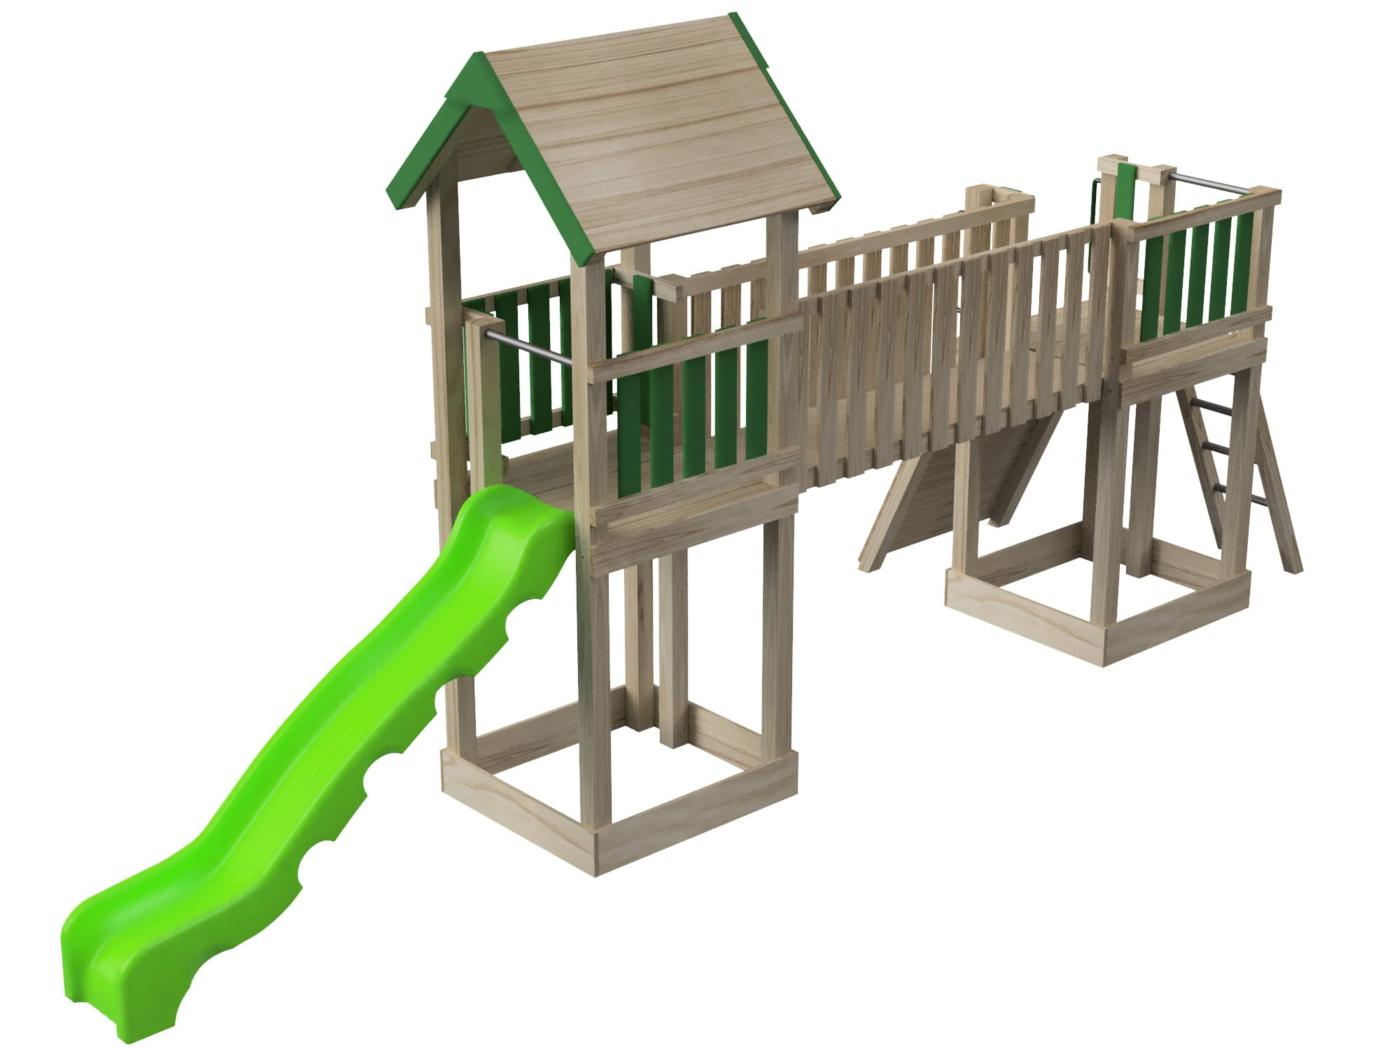 Parque infantil Masgames Aurora Boreal homologado para uso público horeca, con dos torres con casita, tobogán, pasarela y rocódromo vista 3